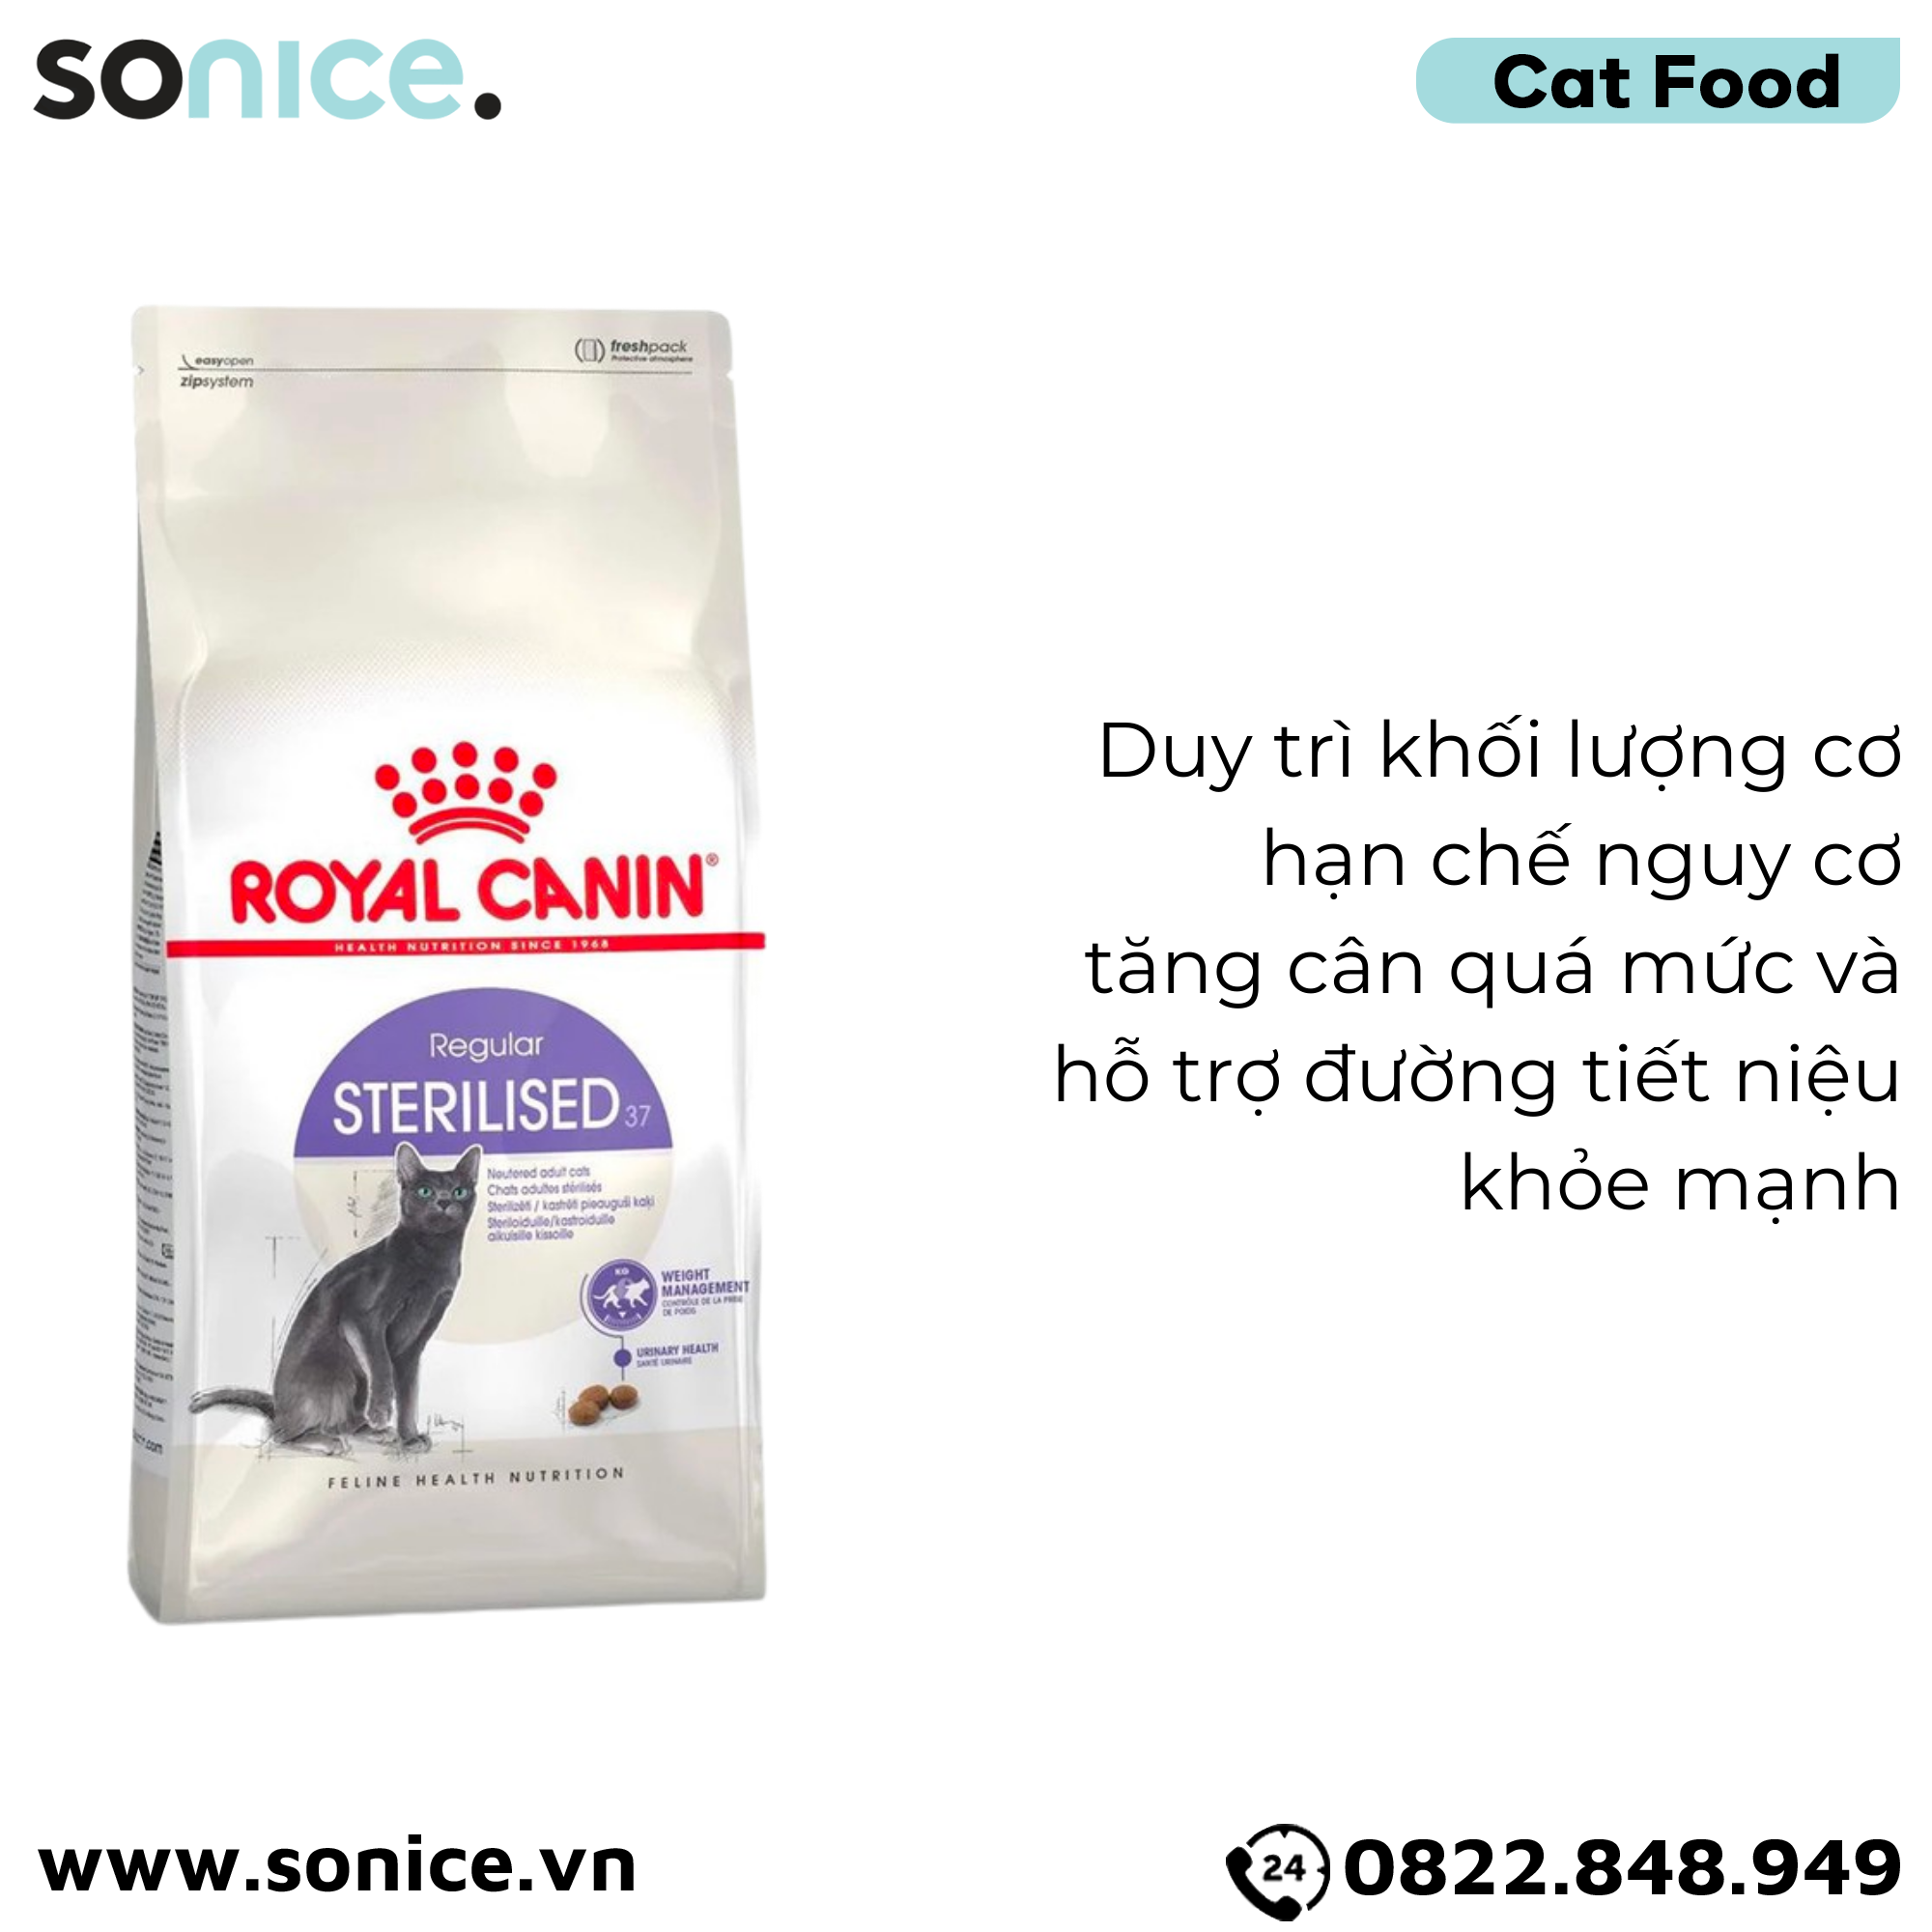  Thức ăn mèo Royal Canin Regular Sterilised - 2kg - Hỗ trợ mèo triệt sản SONICE. 